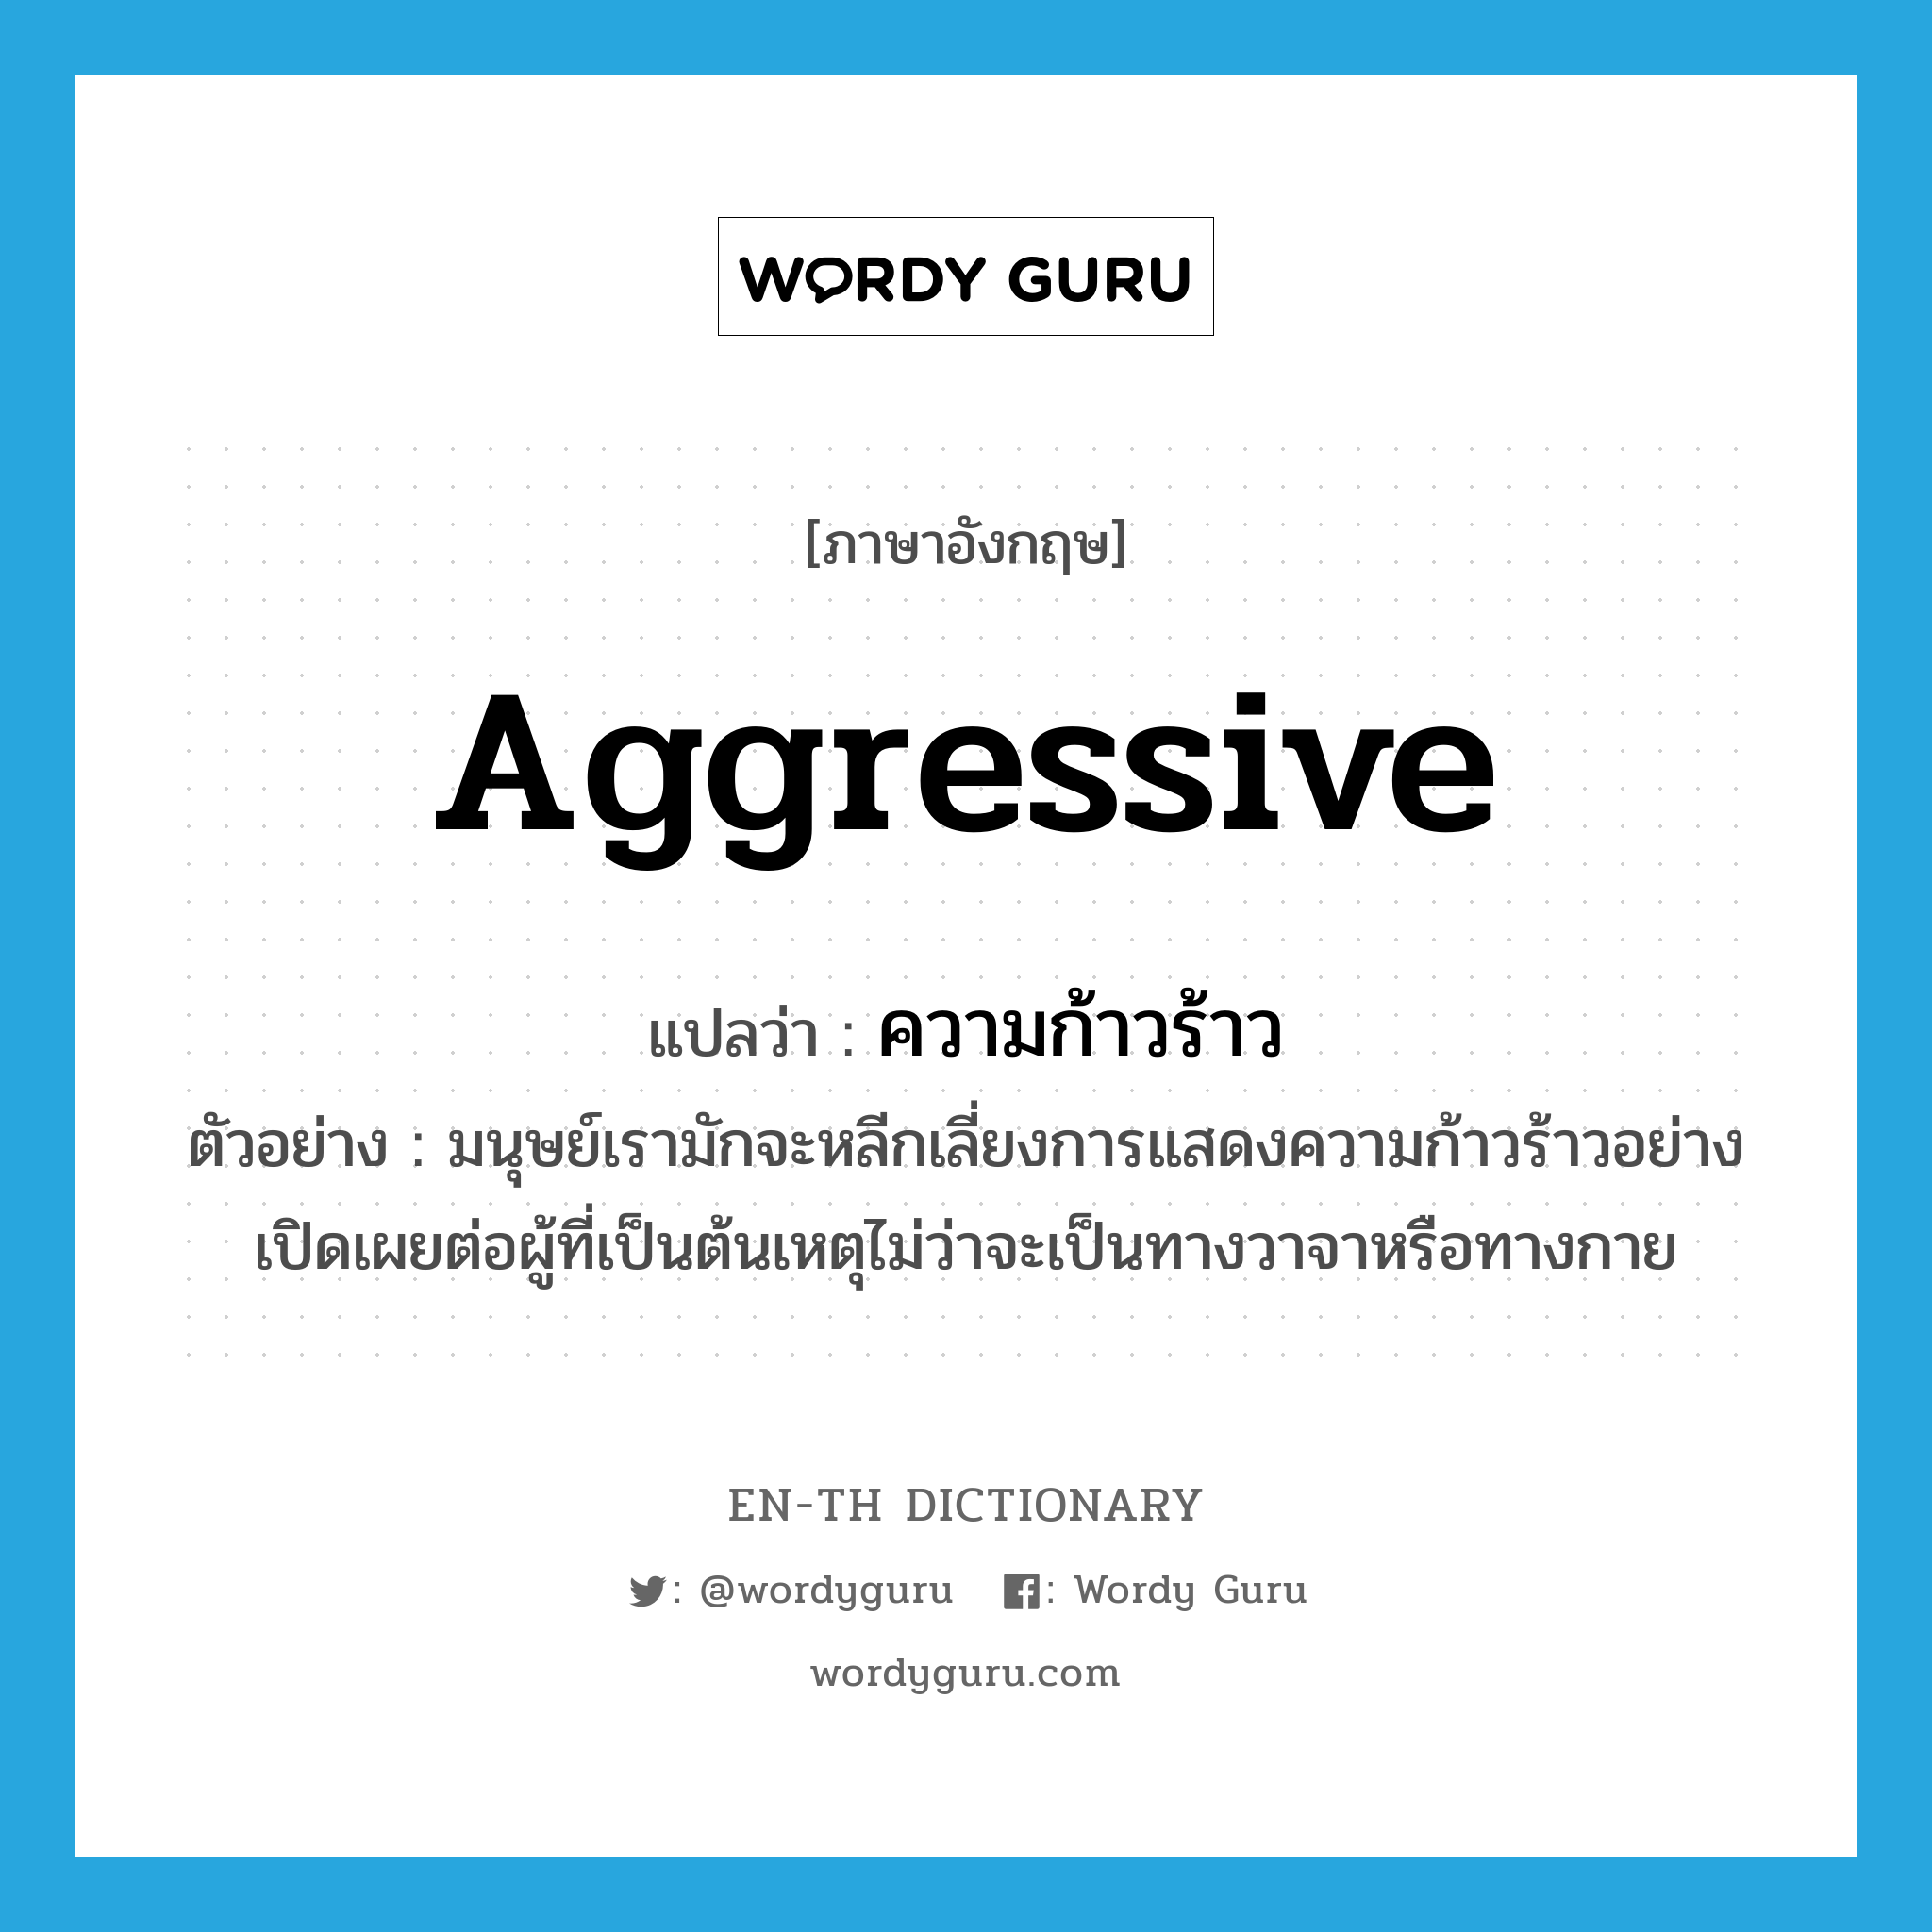 aggressive แปลว่า?, คำศัพท์ภาษาอังกฤษ aggressive แปลว่า ความก้าวร้าว ประเภท N ตัวอย่าง มนุษย์เรามักจะหลีกเลี่ยงการแสดงความก้าวร้าวอย่างเปิดเผยต่อผู้ที่เป็นต้นเหตุไม่ว่าจะเป็นทางวาจาหรือทางกาย หมวด N